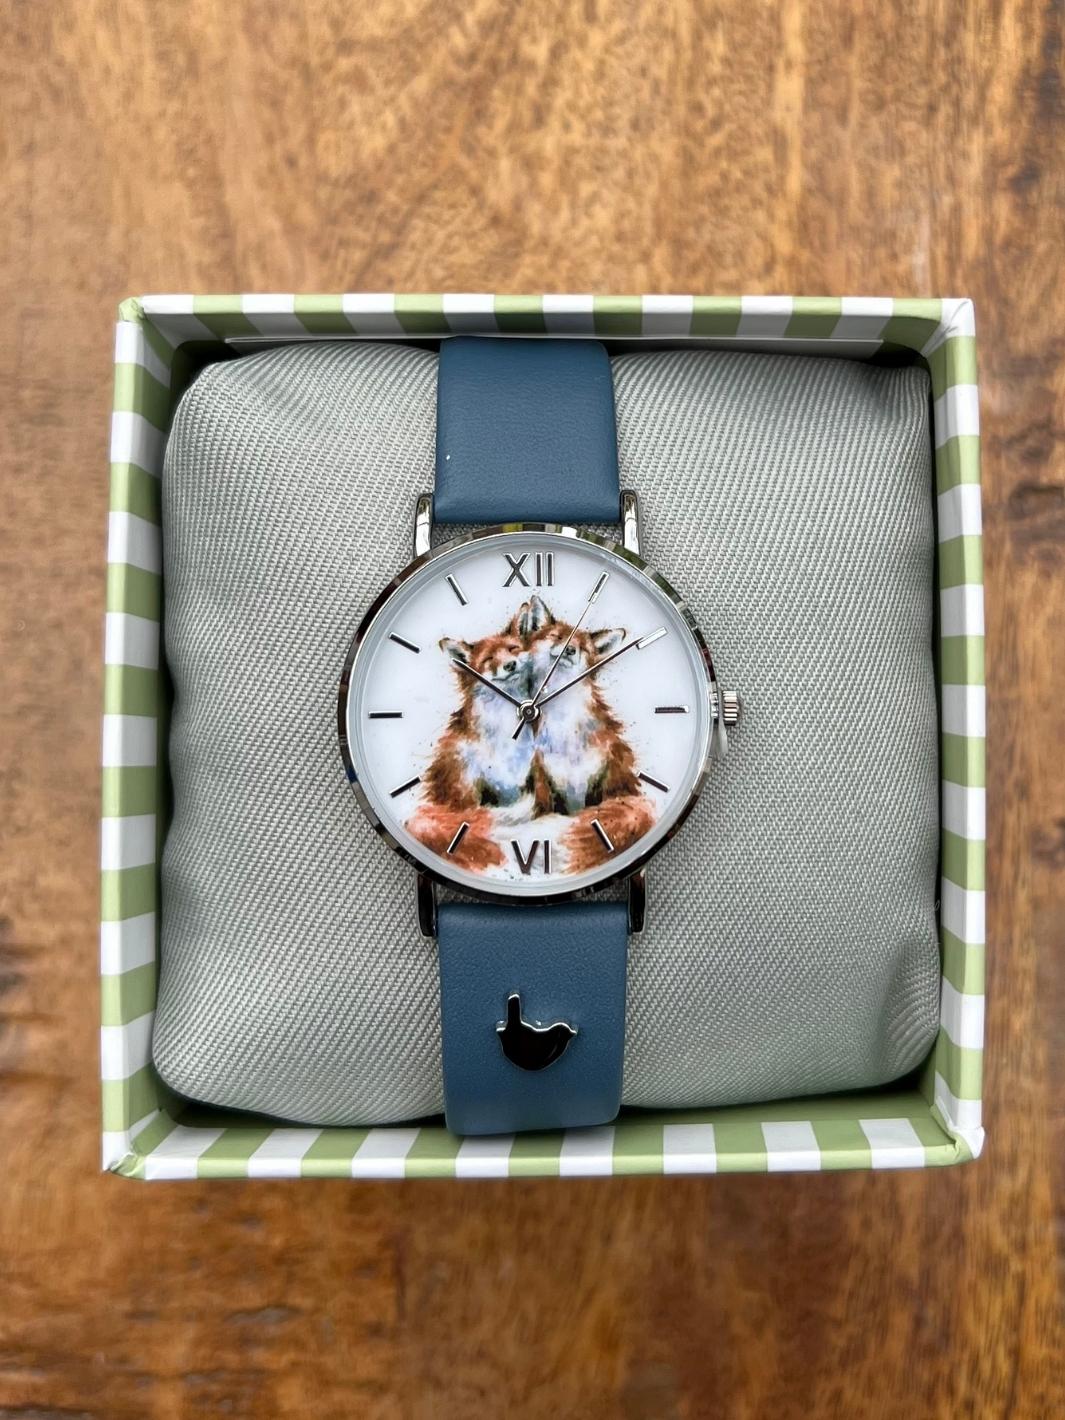 Armbanduhr in Geschenkverpackung mit Füchsen von Wrendale Designs.